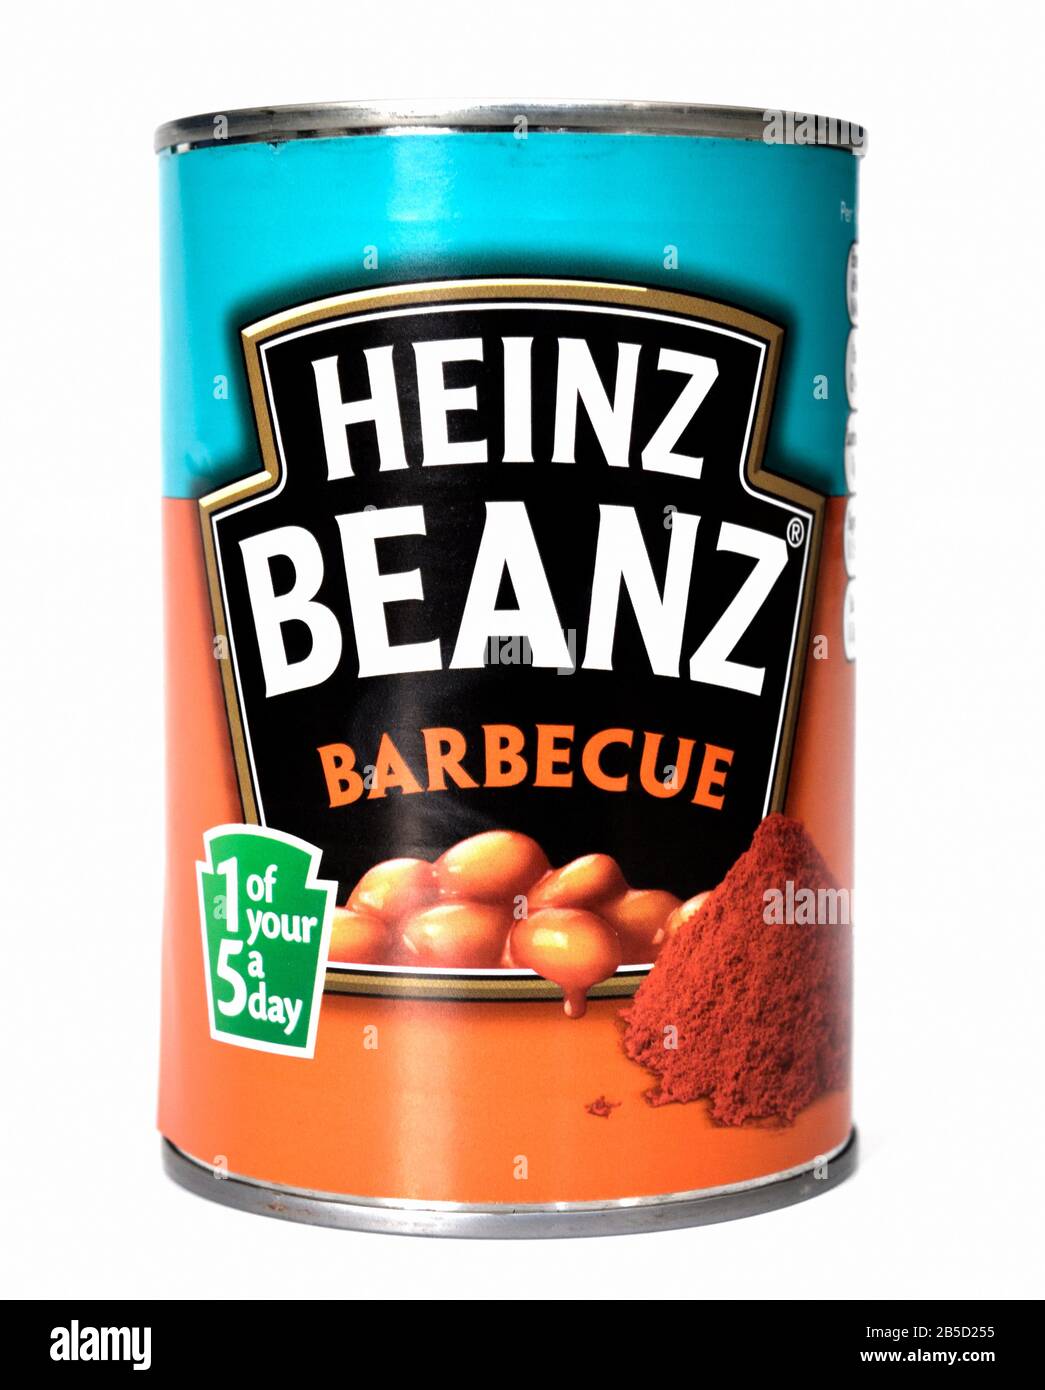 Una teglia di fagioli Heinz barbecue su uno sfondo bianco Foto Stock